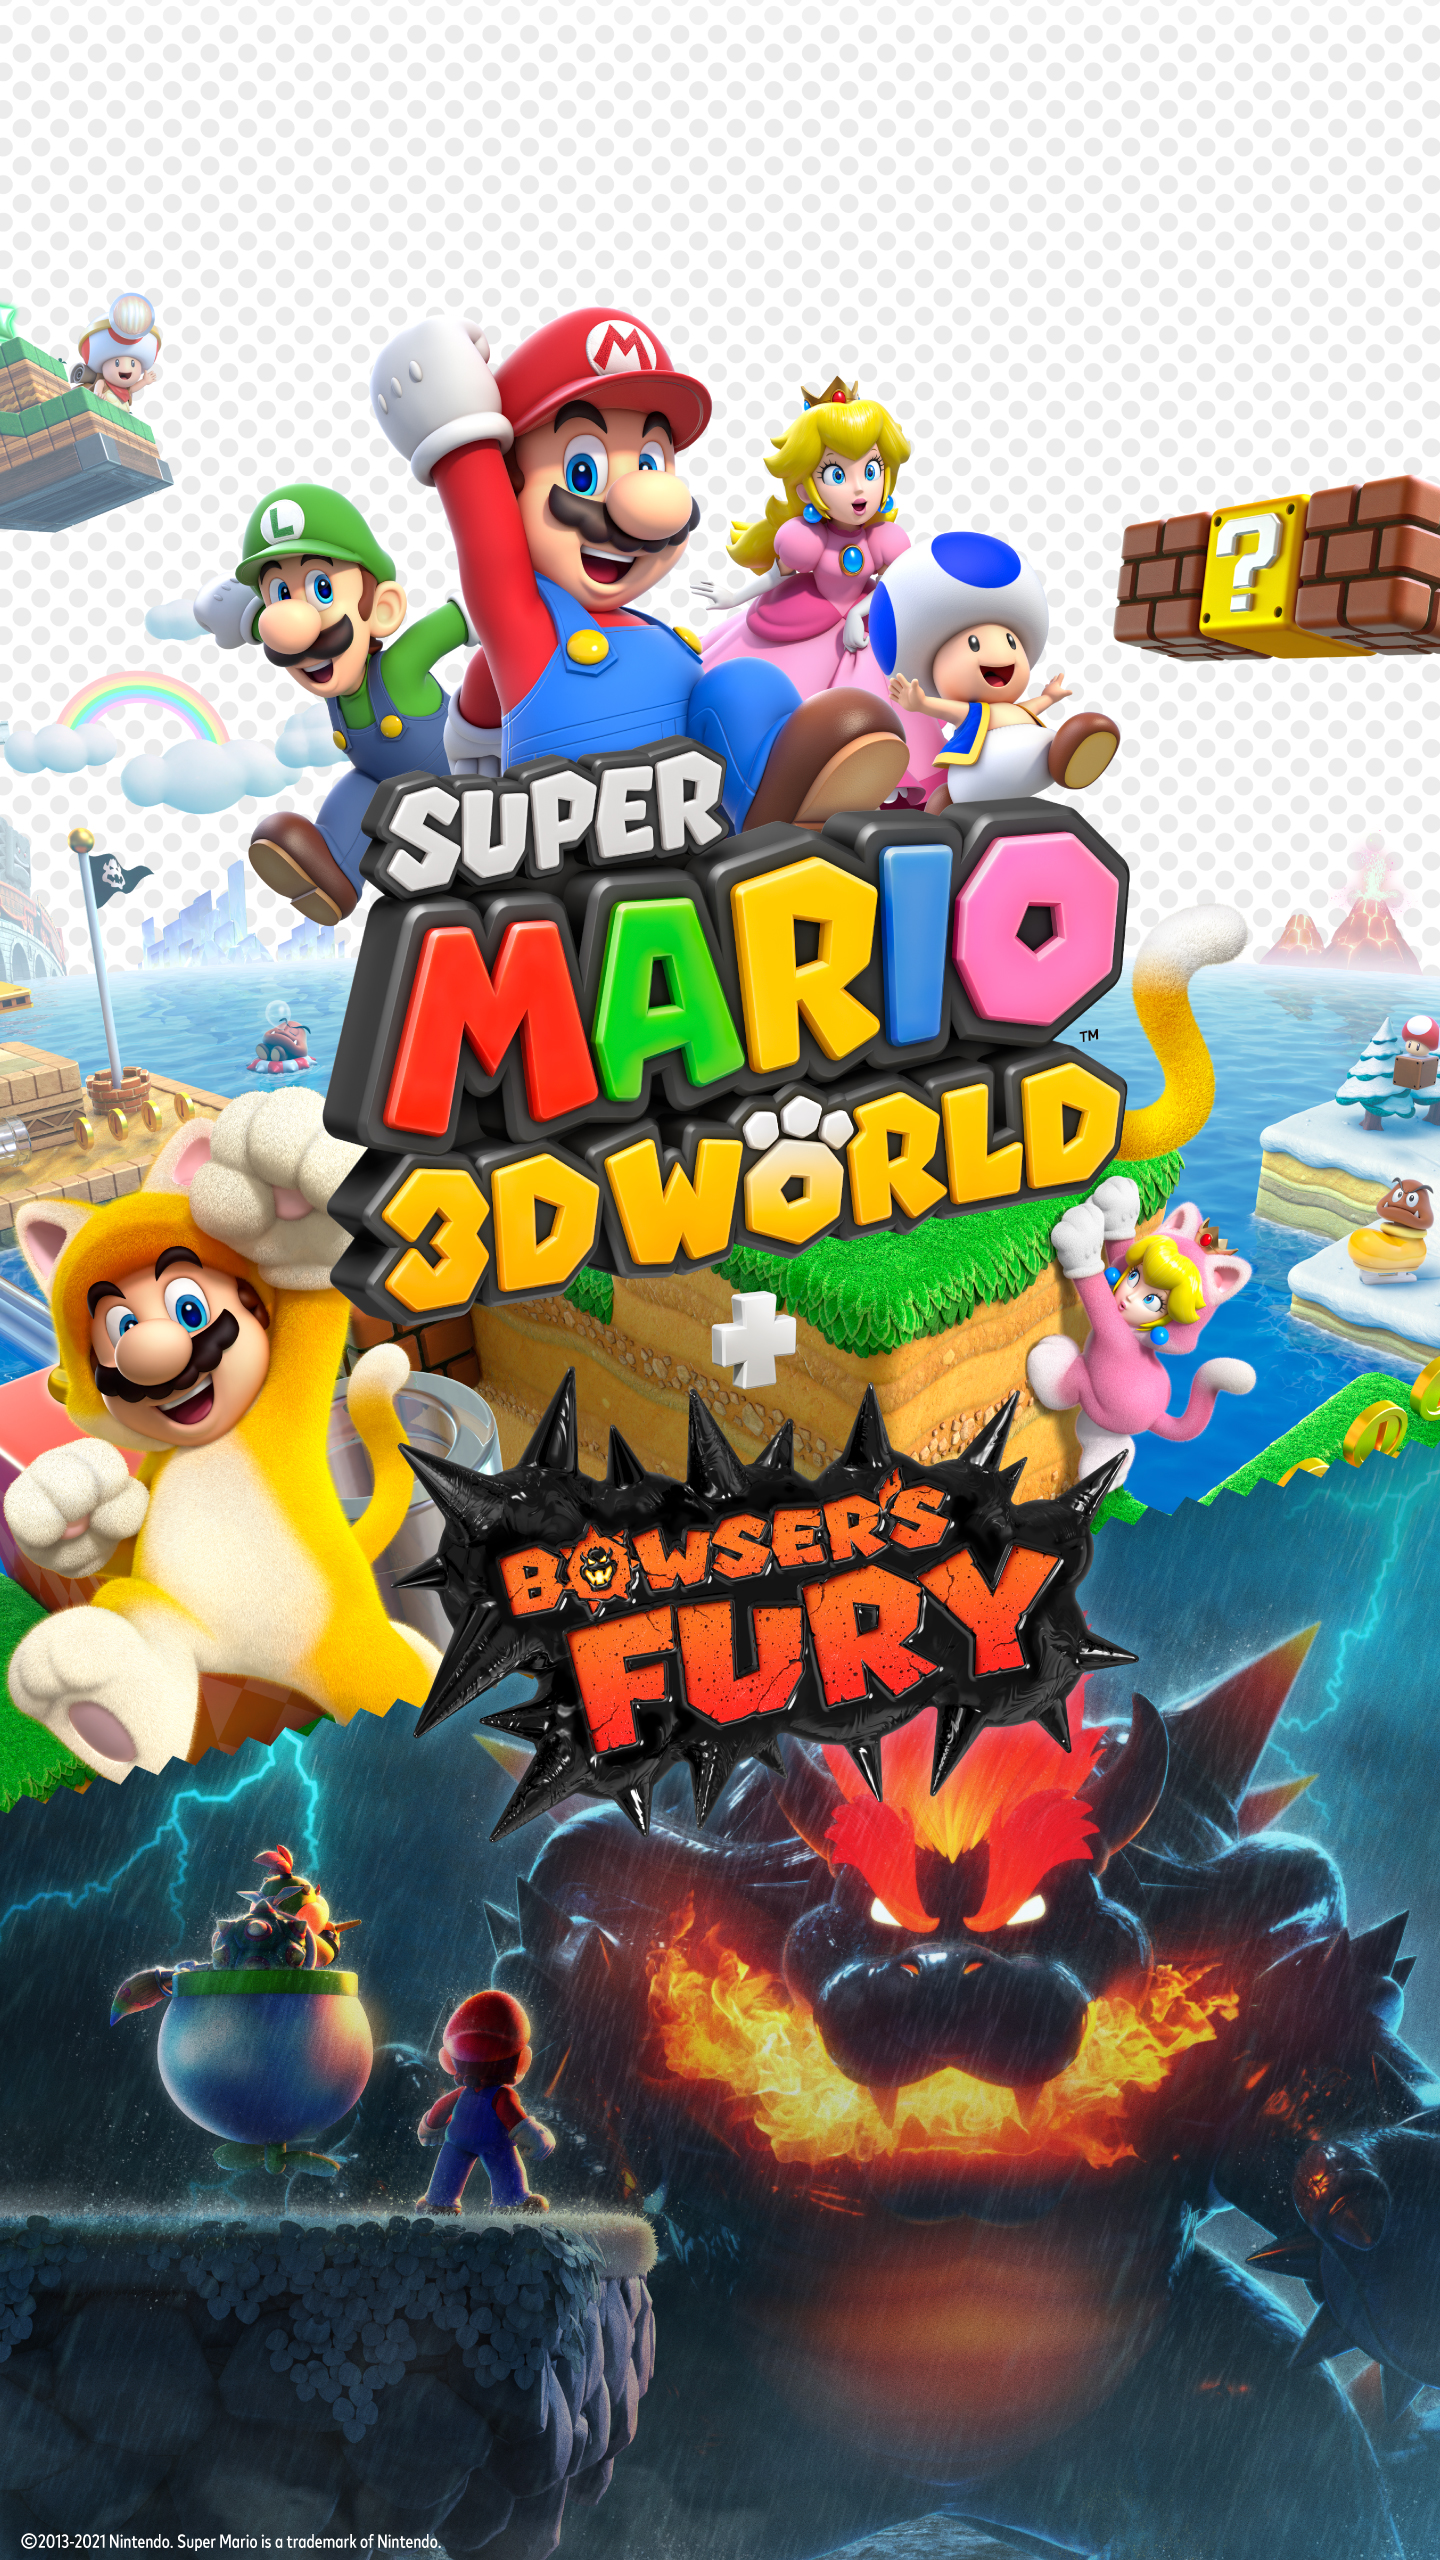 super mario 3d world + bowser’s fury, video game, bowser’s fury, bowser, luigi, bowser jr, toad (mario), mario, princess peach